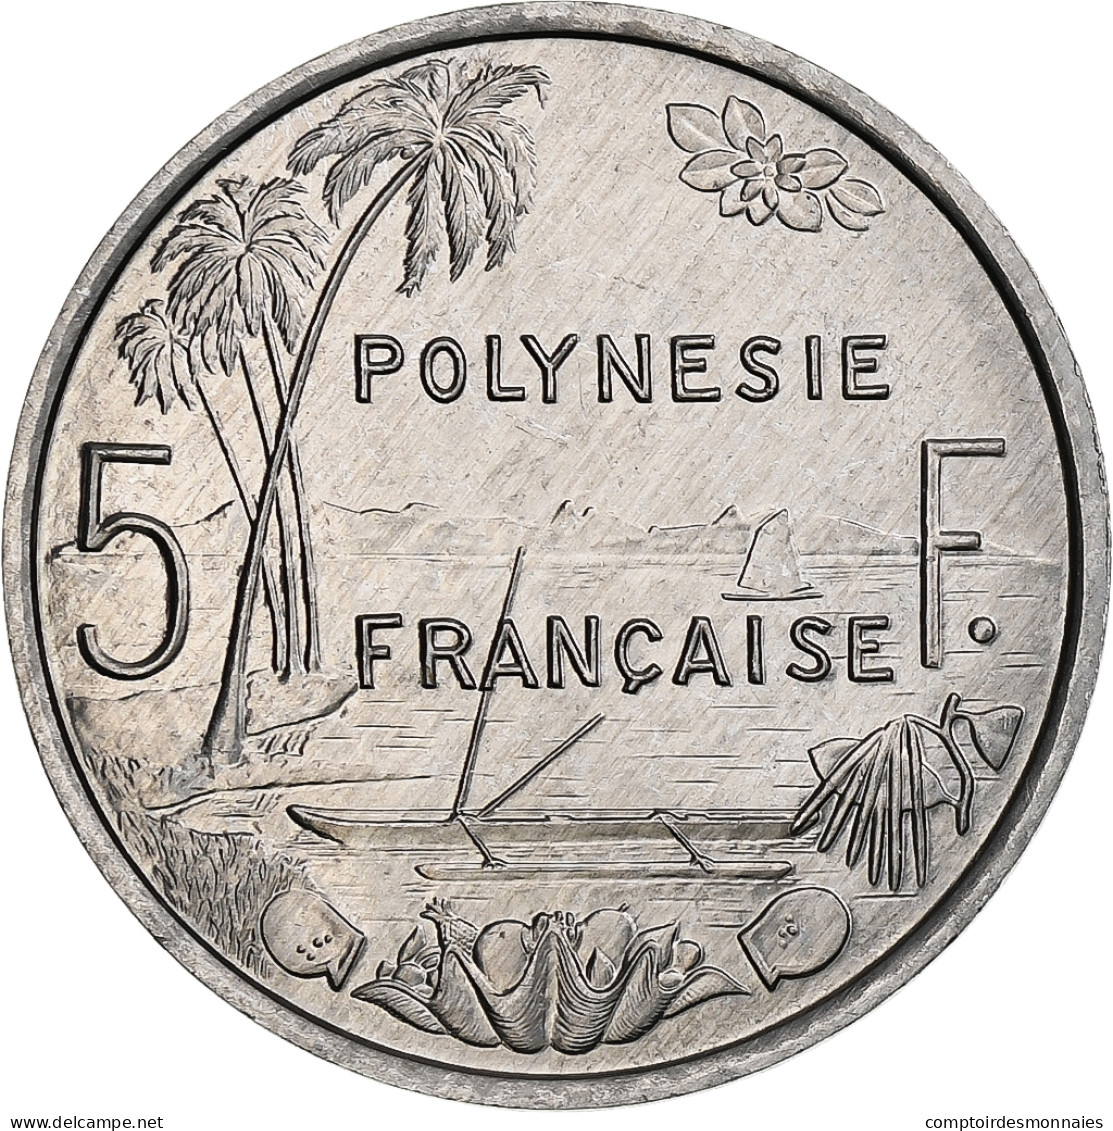 Polynésie Française, 5 Francs, 1994, Paris, I.E.O.M., Aluminium, SPL, KM:16 - French Polynesia